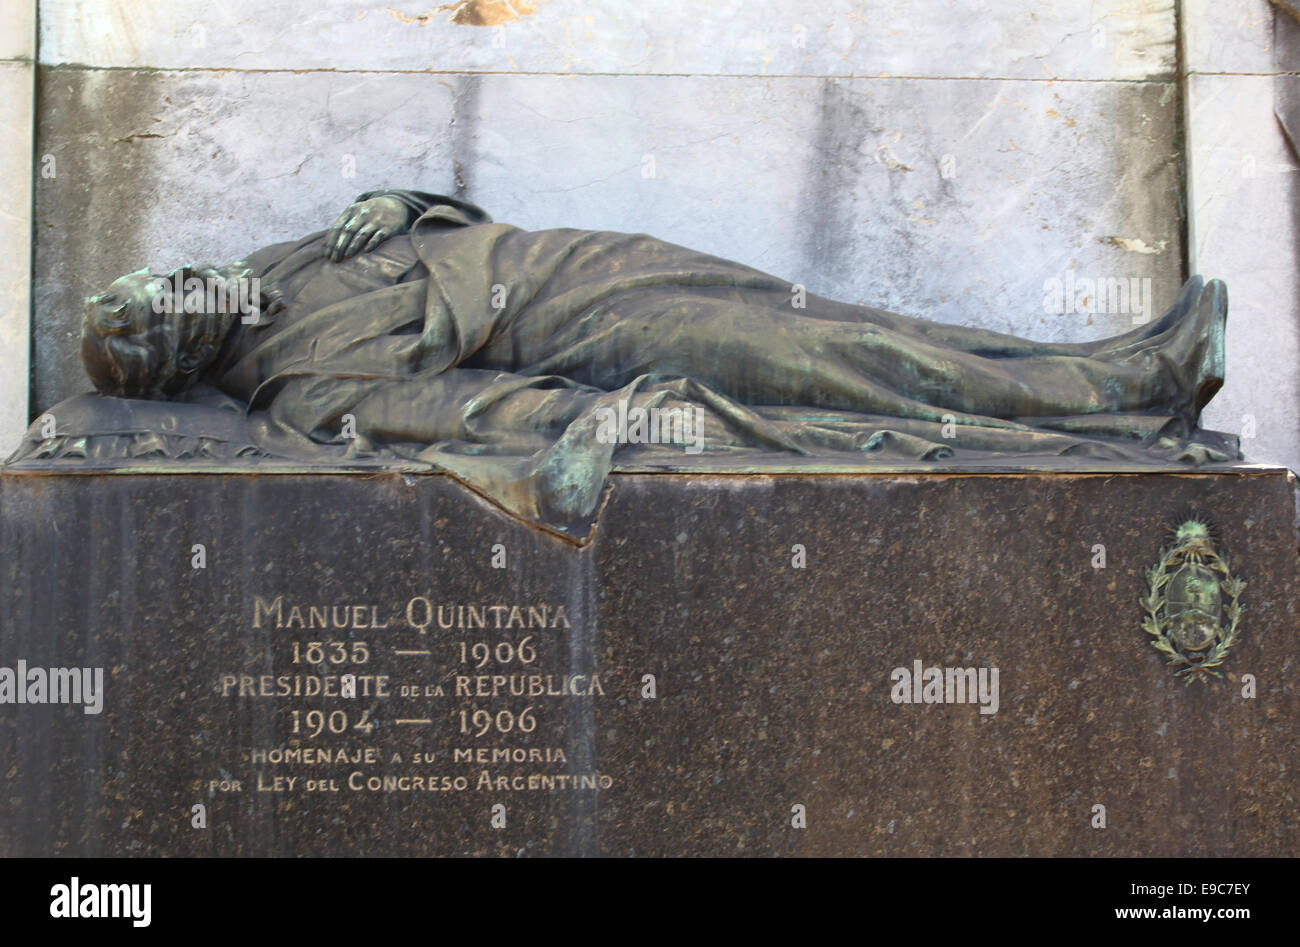 Hommage à la mémoire de Manuel Quintana, ancien président de l'Argentine. Cimetière monumental de Recoleta, Buenos Aires, Argentine. Banque D'Images